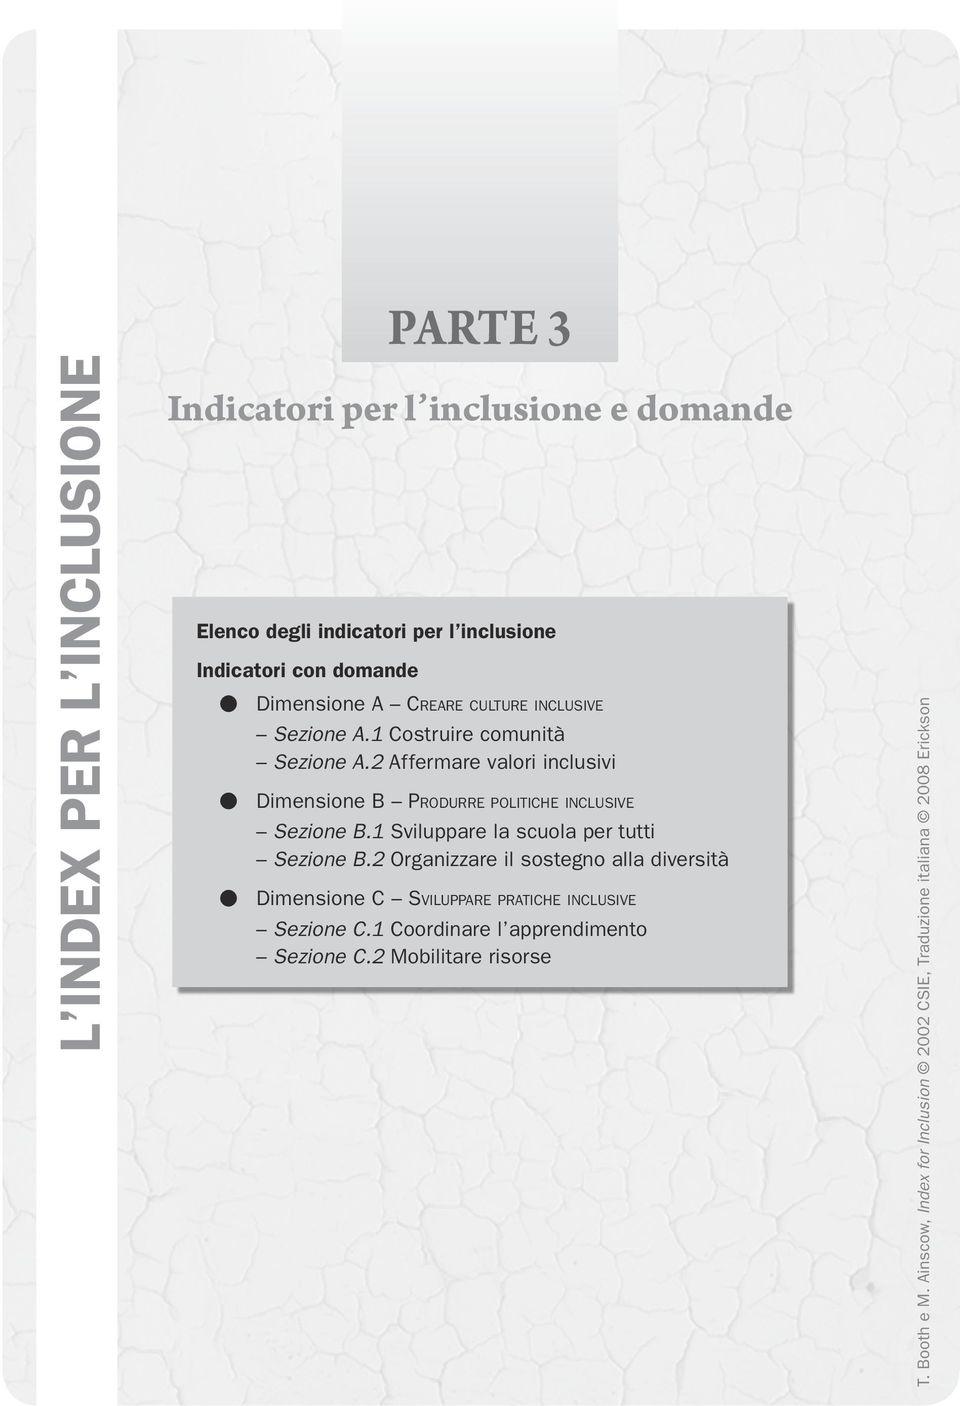 2 Affermare valori inclusivi Dimensione B Produrre politiche inclusive Sezione B.